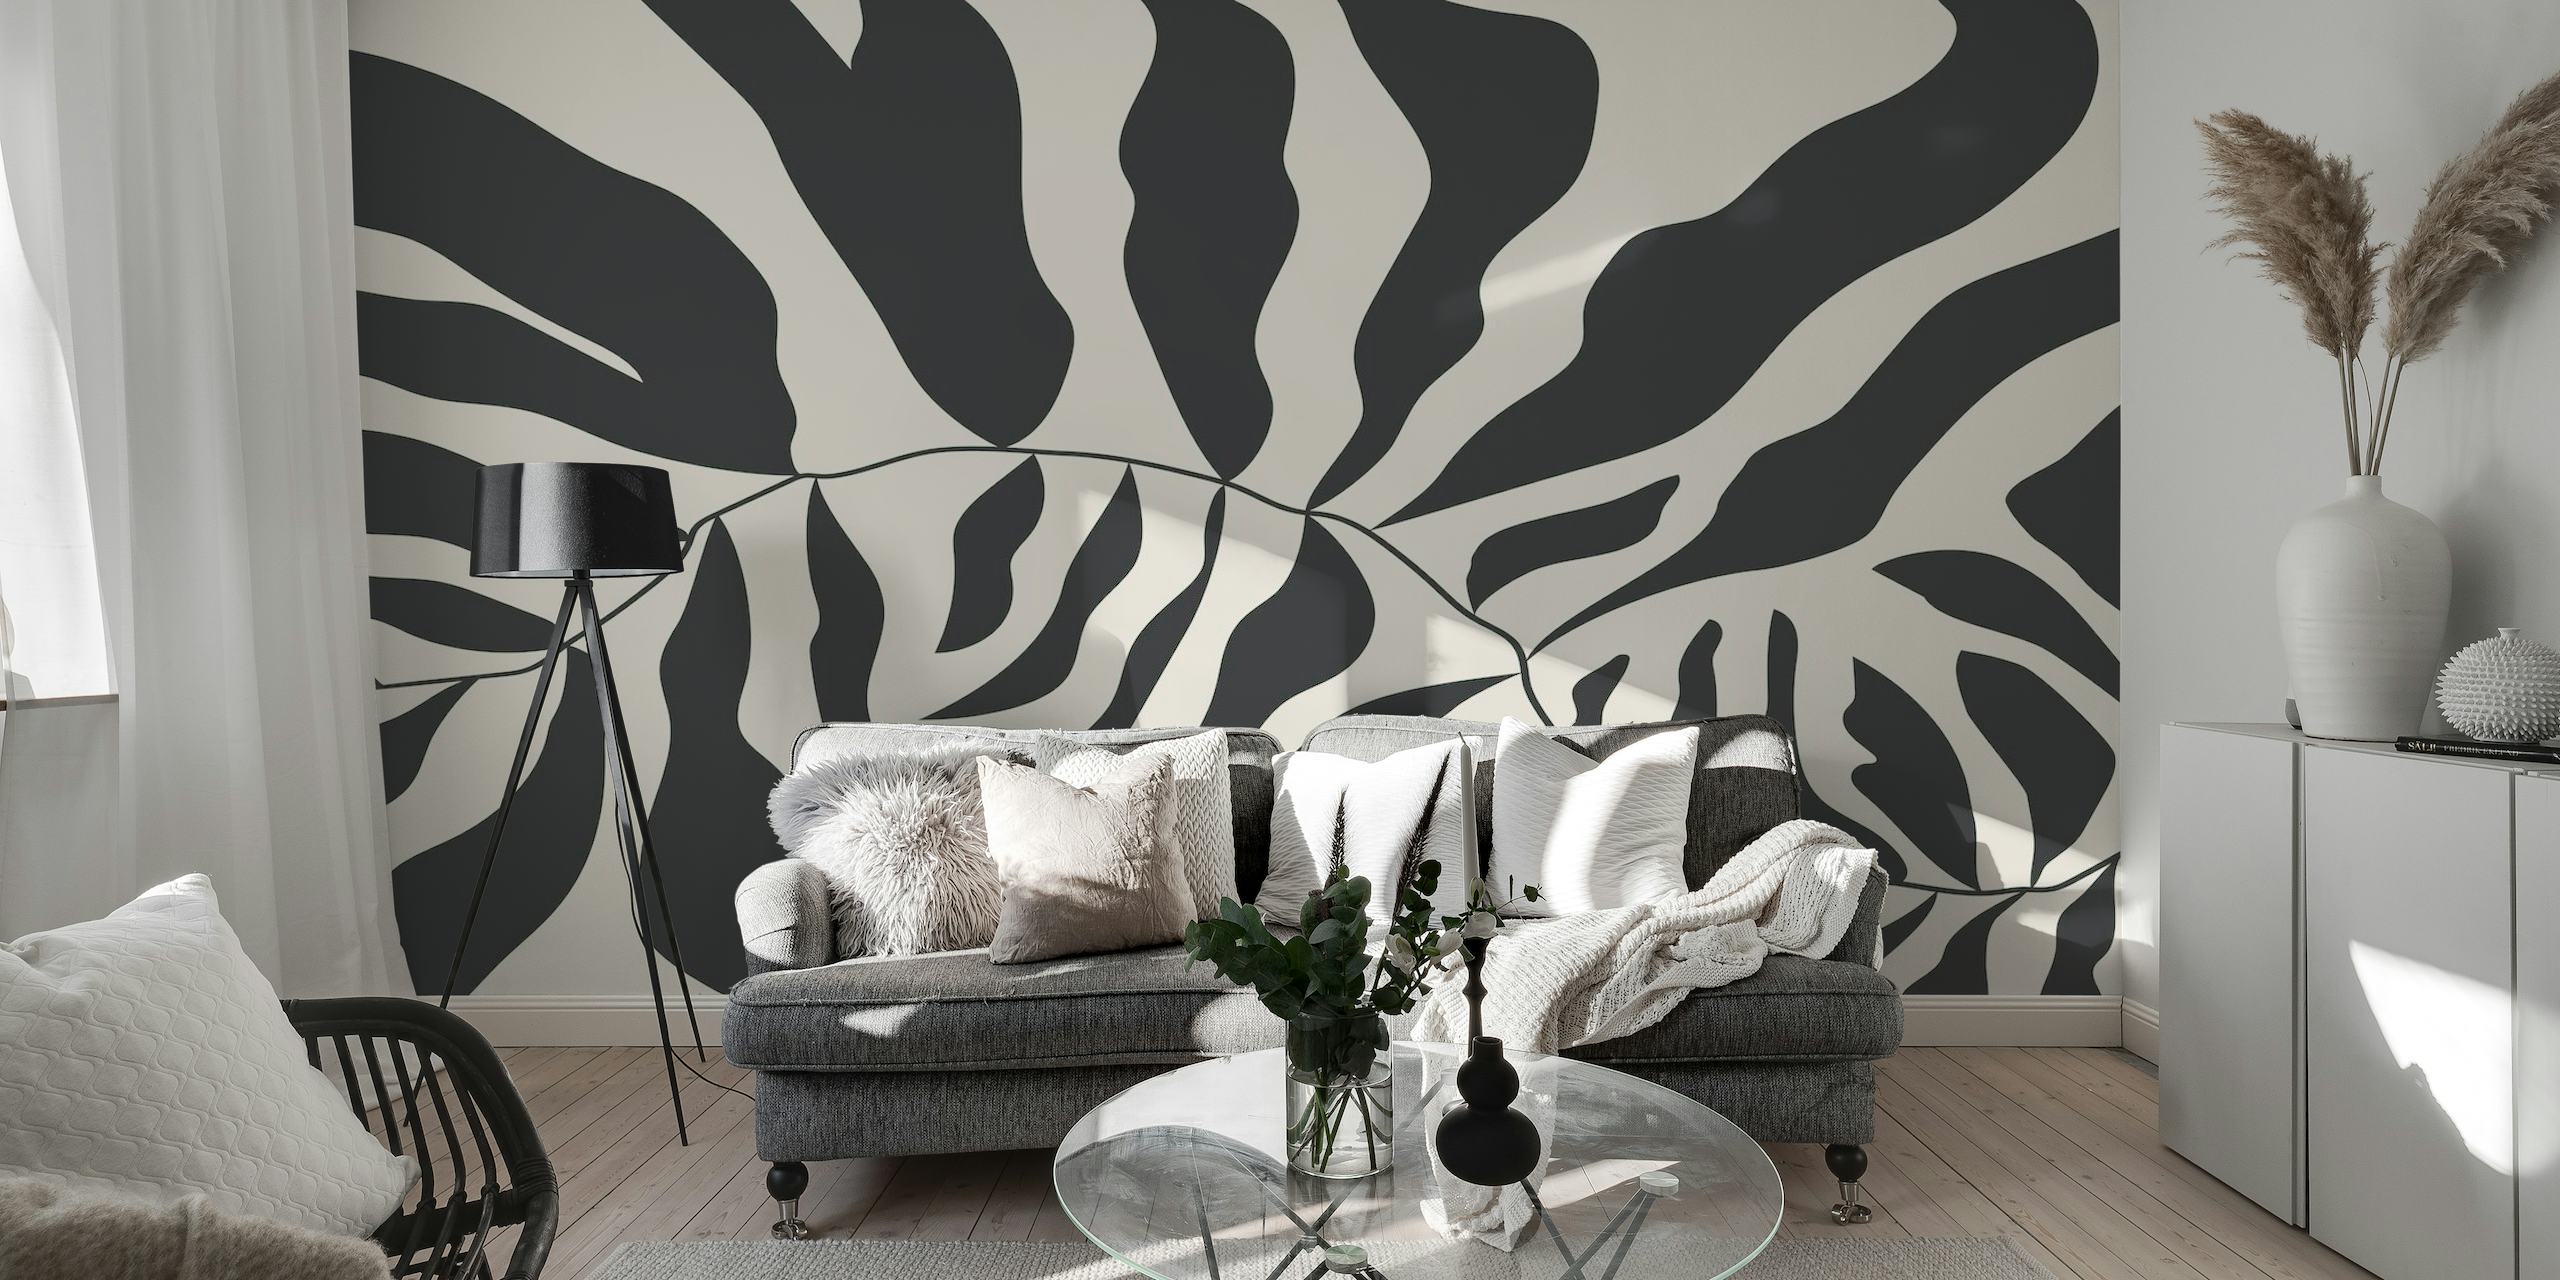 Crno-bijeli apstraktni zidni mural u stilu Matissea koji prikazuje organske oblike